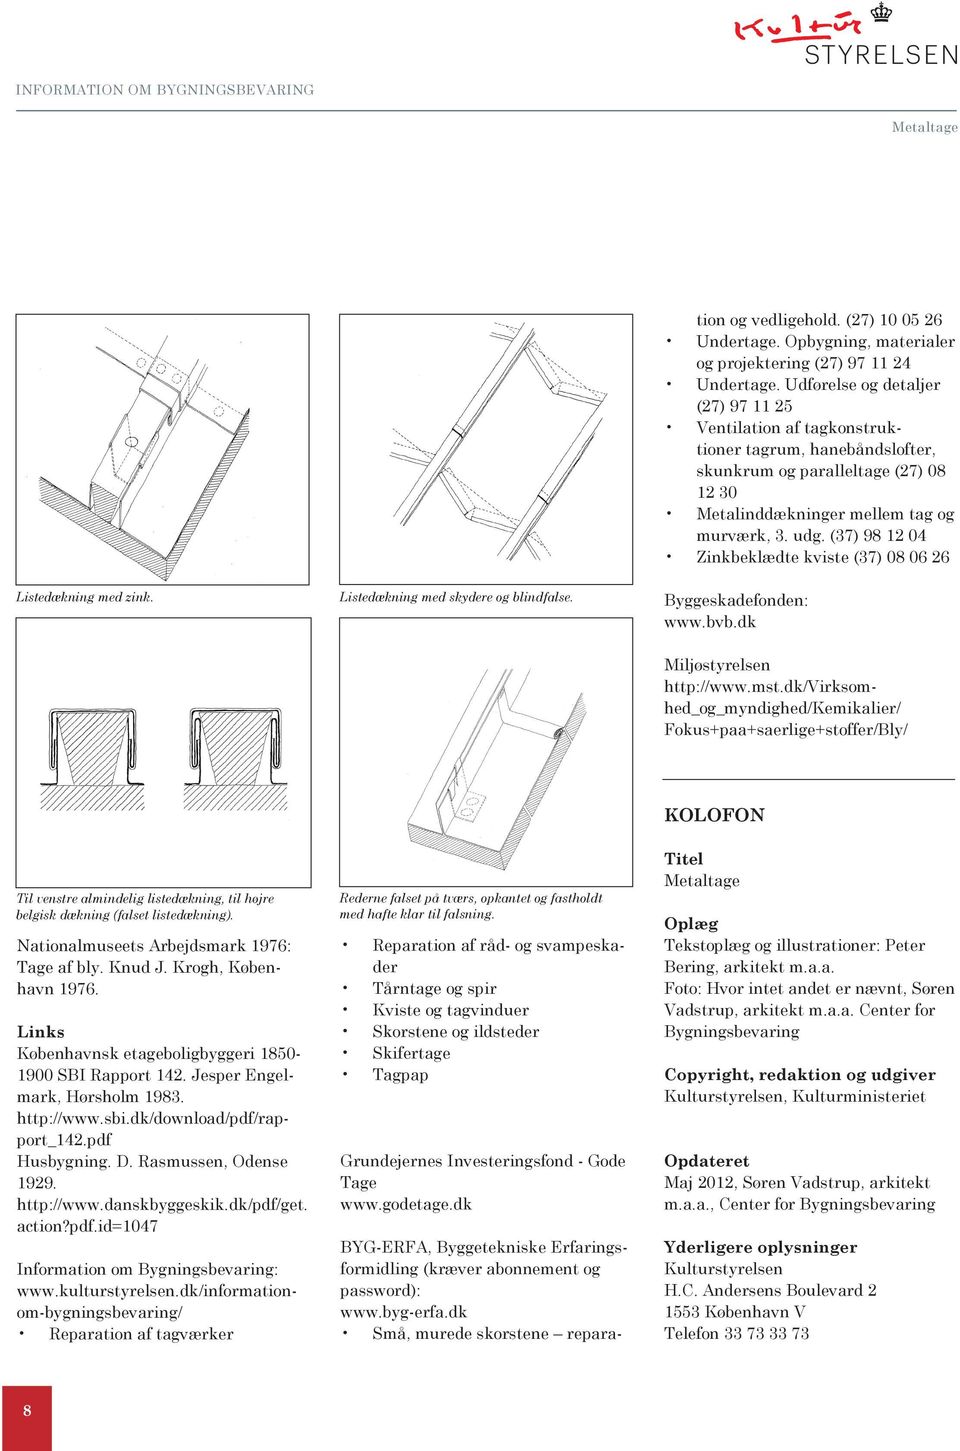 Udførelse og detaljer (27) 97 11 25 Ventilation af tagkonstruktioner tagrum, hanebåndslofter, skunkrum og paralleltage (27) 08 12 30 Metalinddækninger mellem tag og murværk, 3. udg.